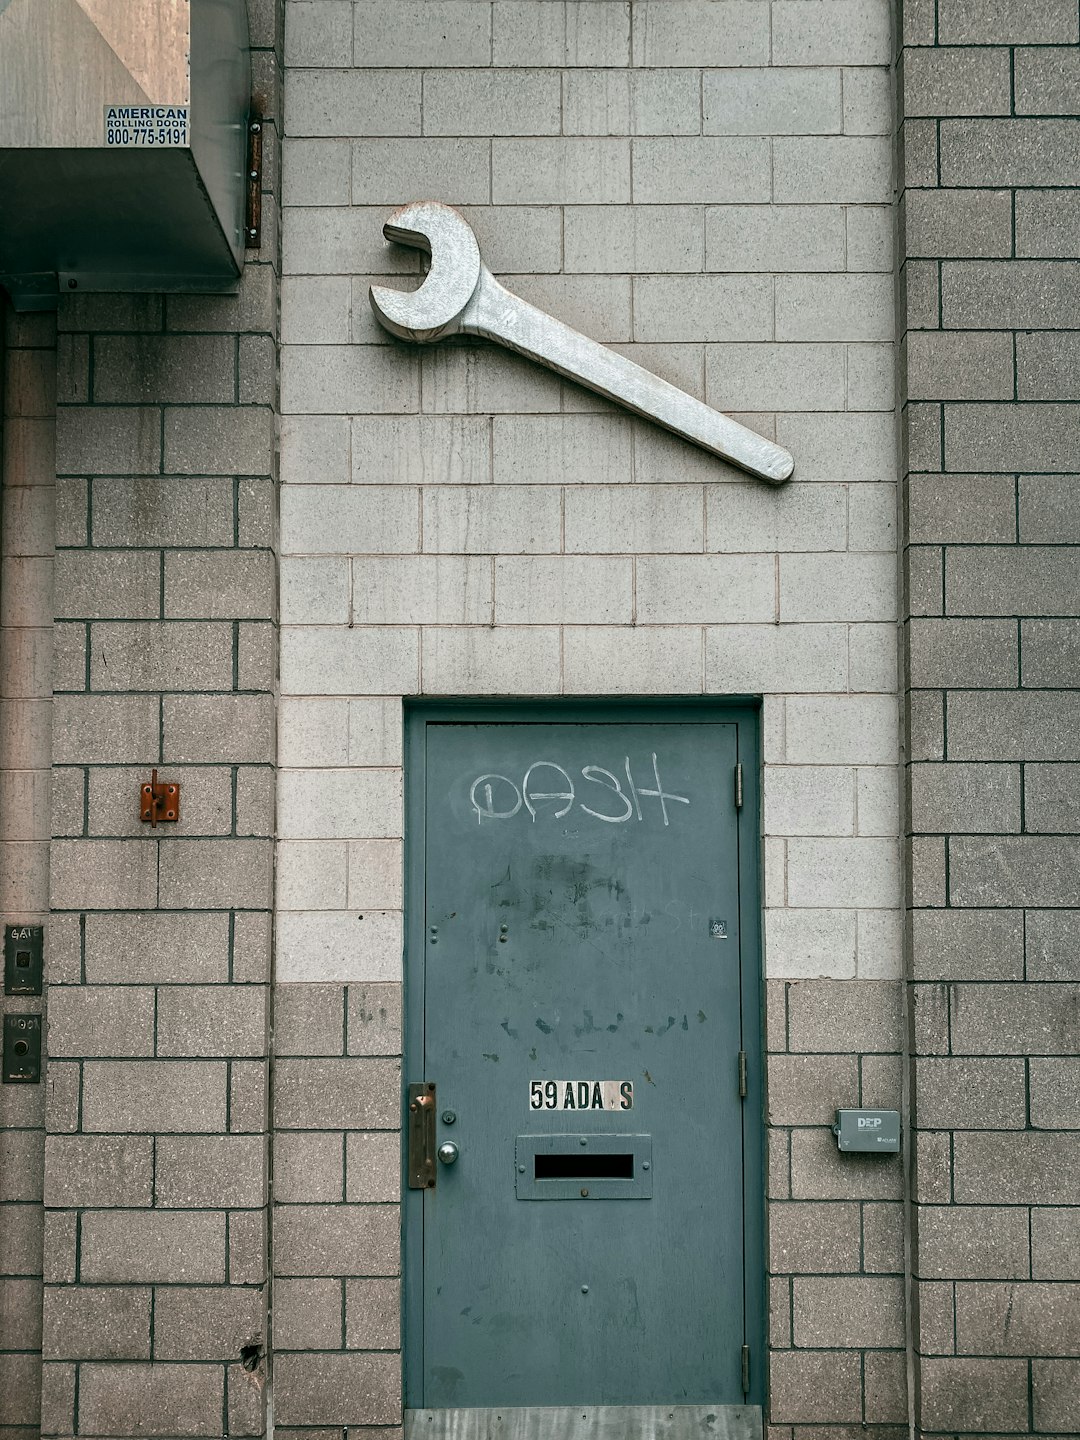 gray steel door with number 8